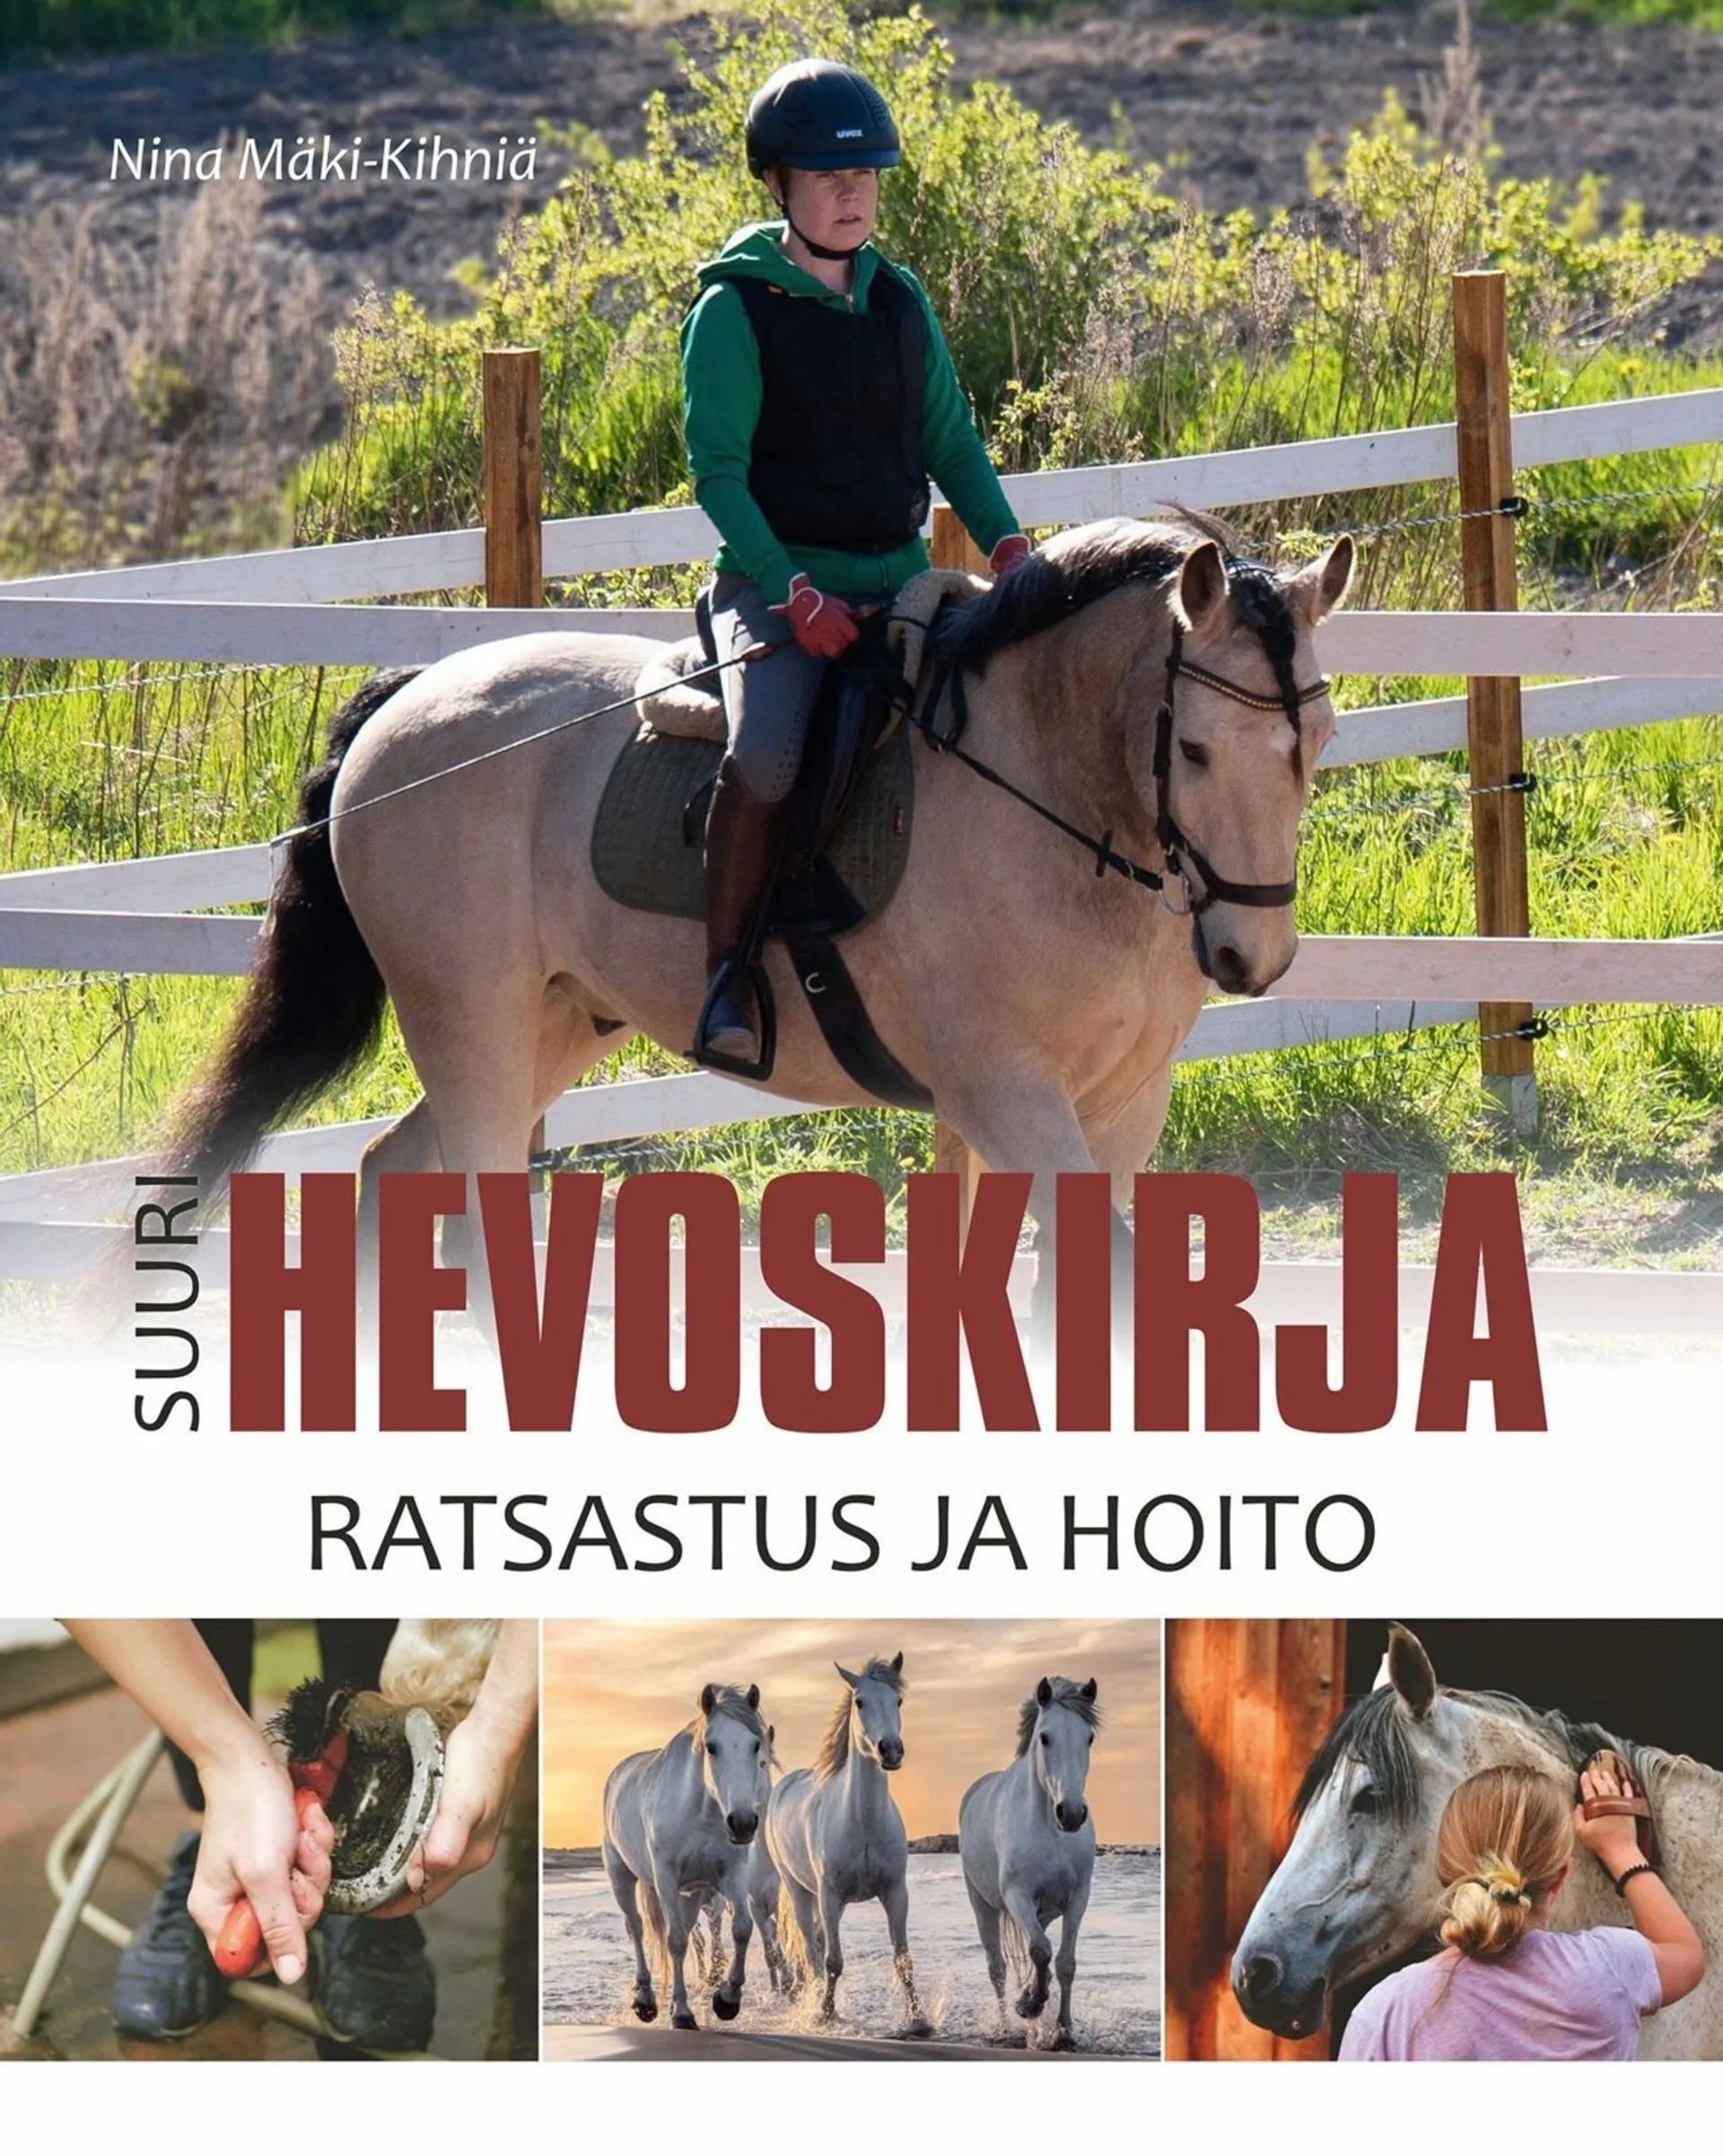 Mäki-Kihniä, Suuri hevoskirja - Ratsastus ja hoito